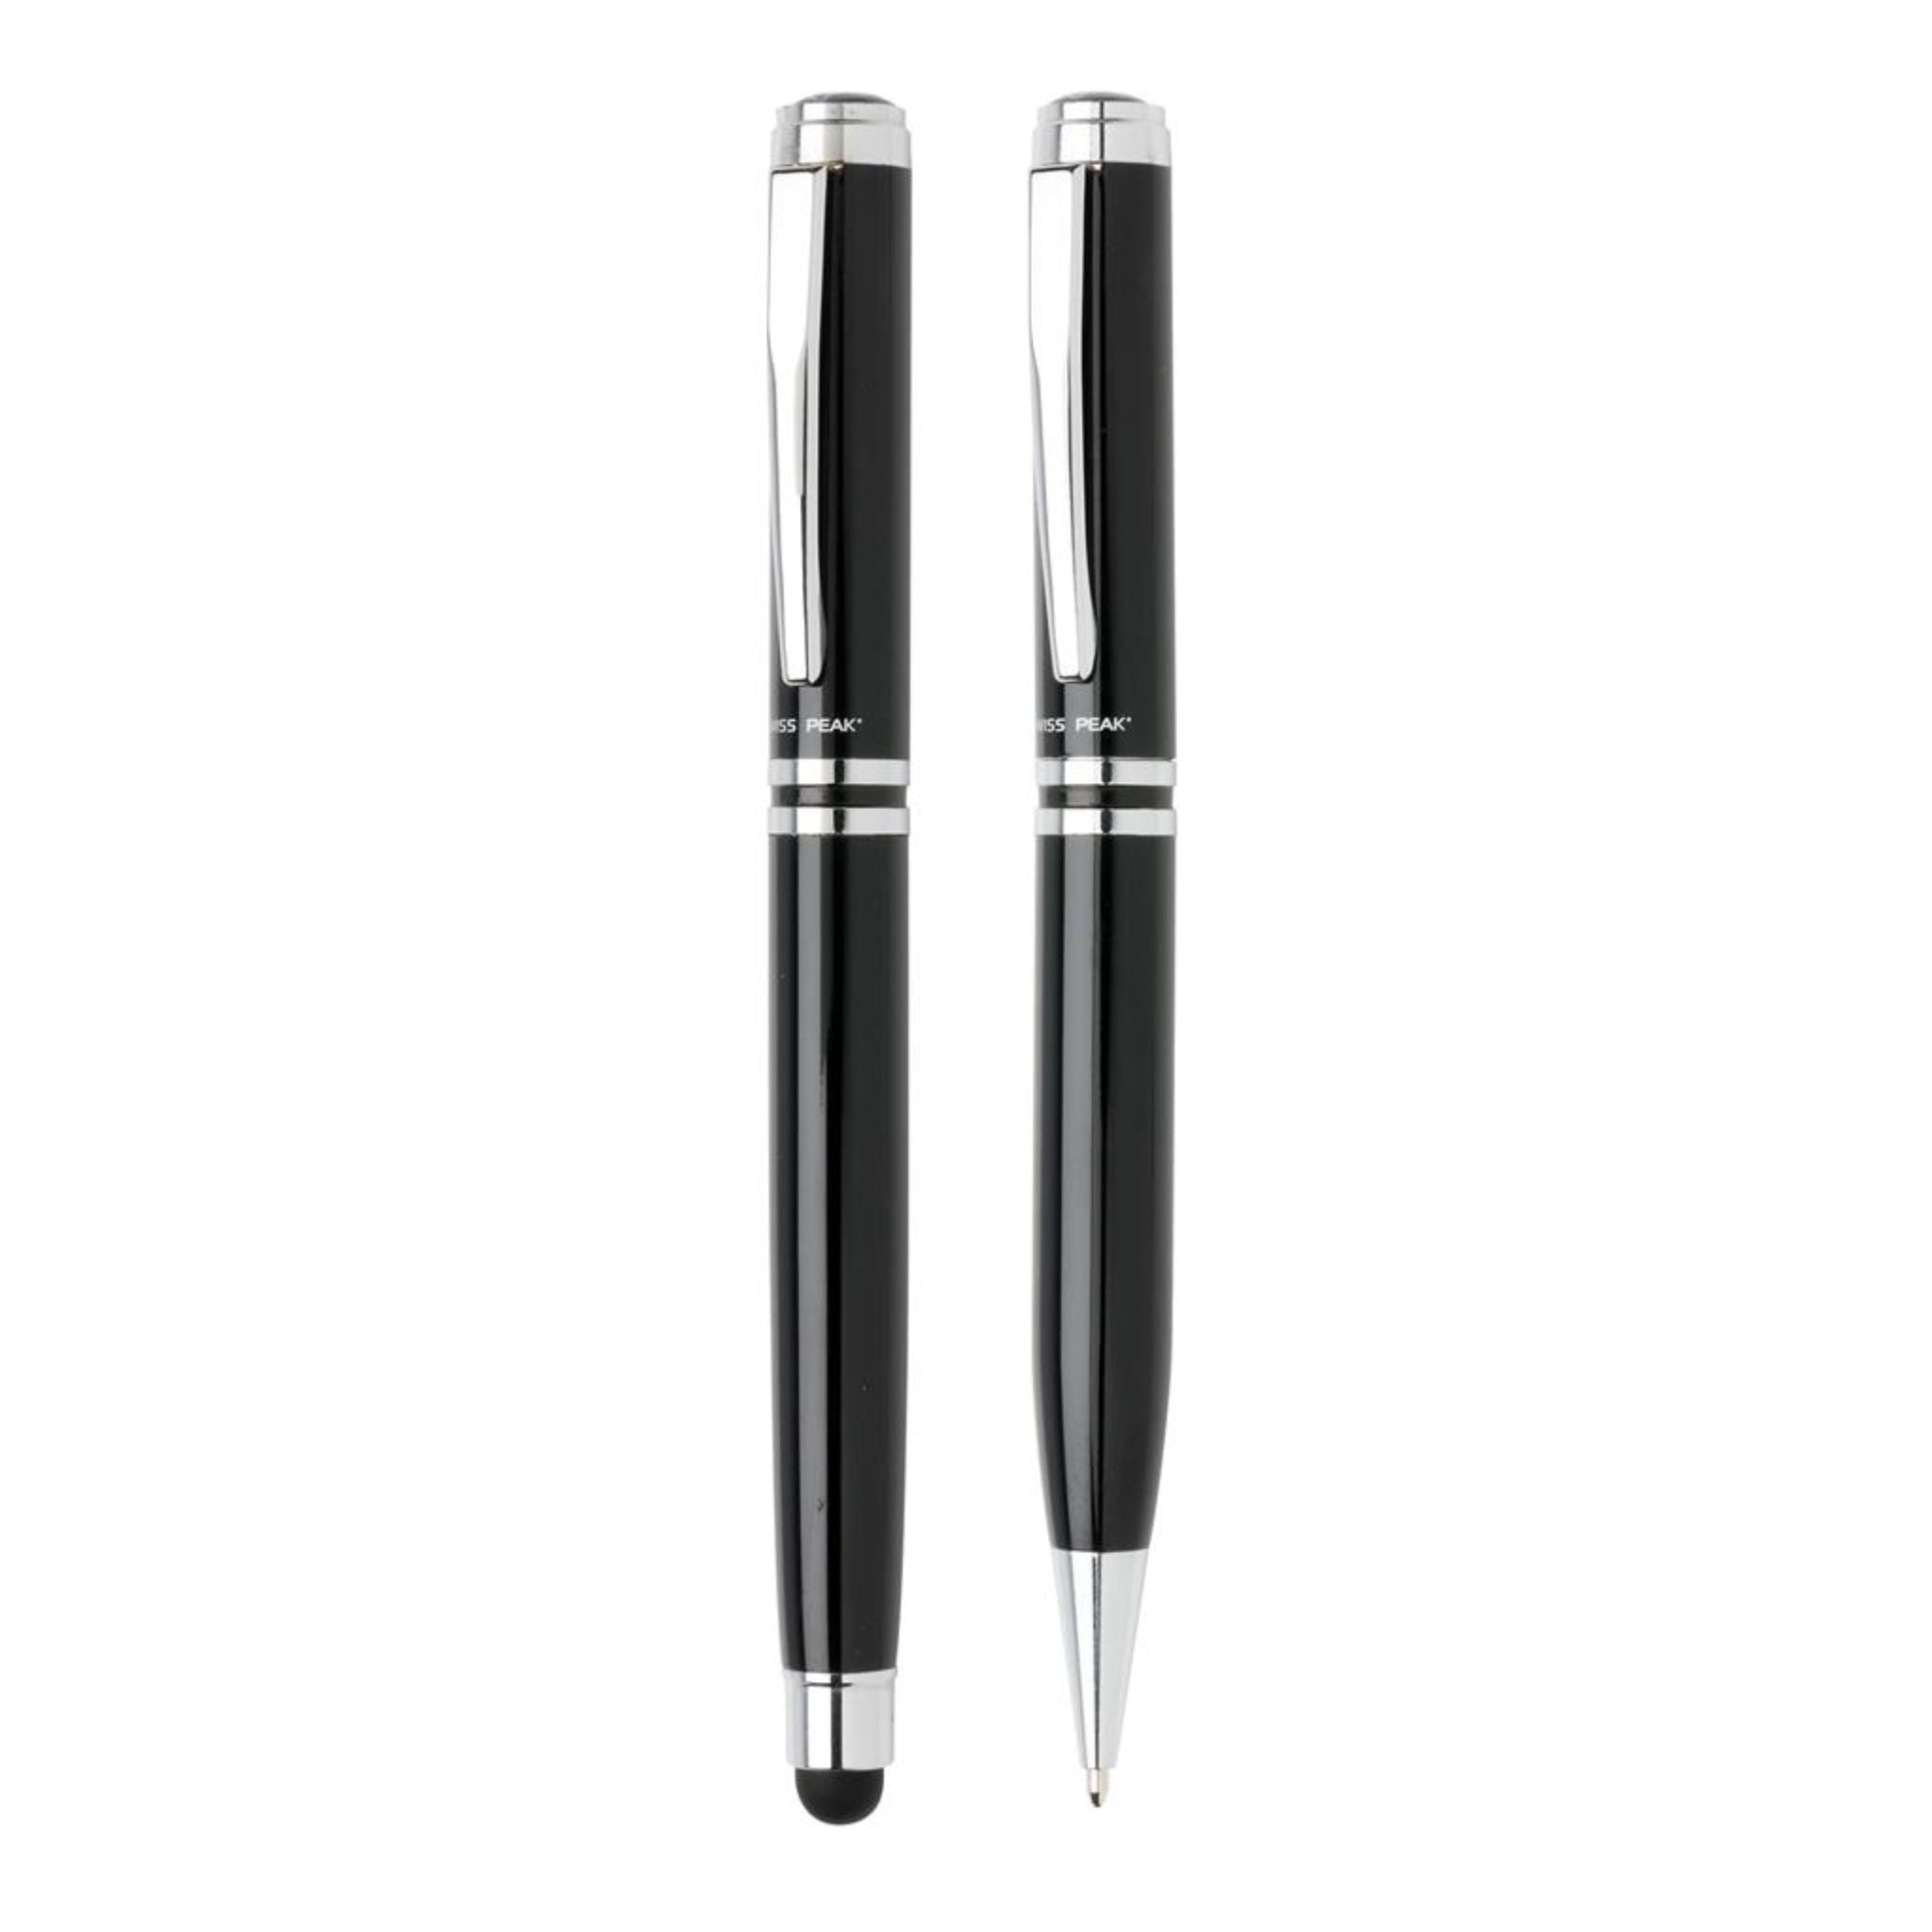 Black and Silver Executive Pen Set